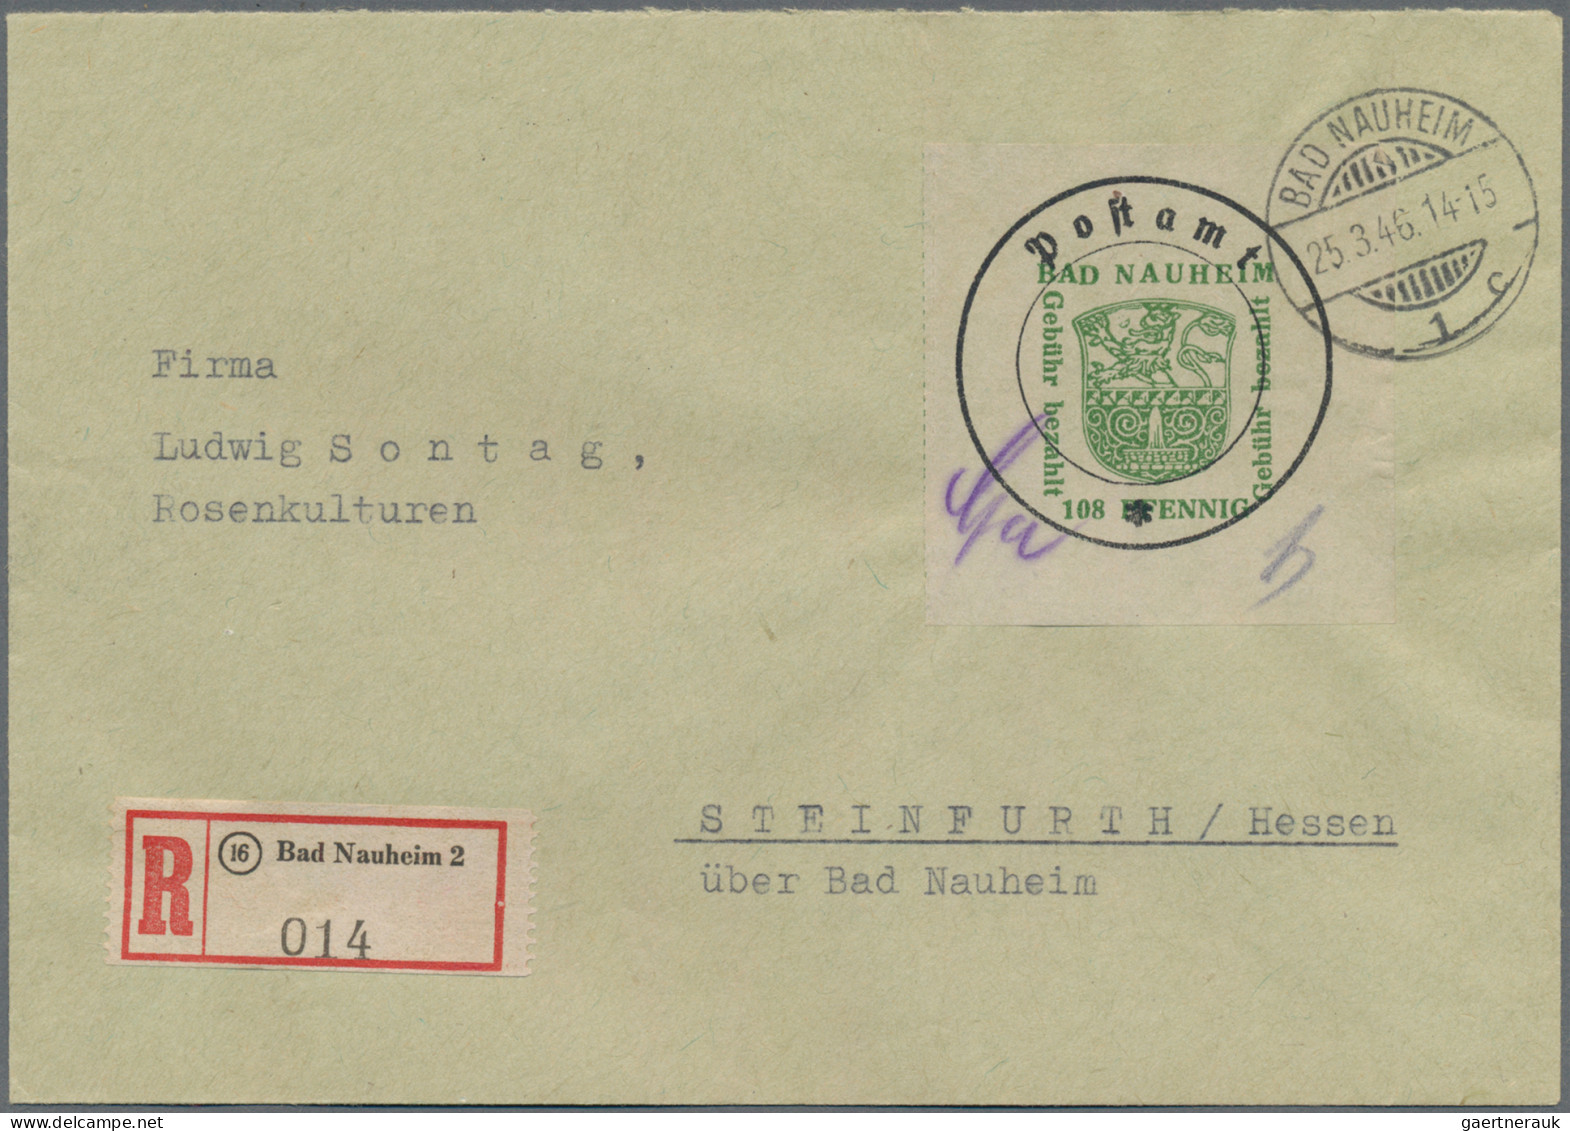 Deutsche Lokalausgaben ab 1945: 1946 Bad Nauheim: Die fünf verschiedenen Postver